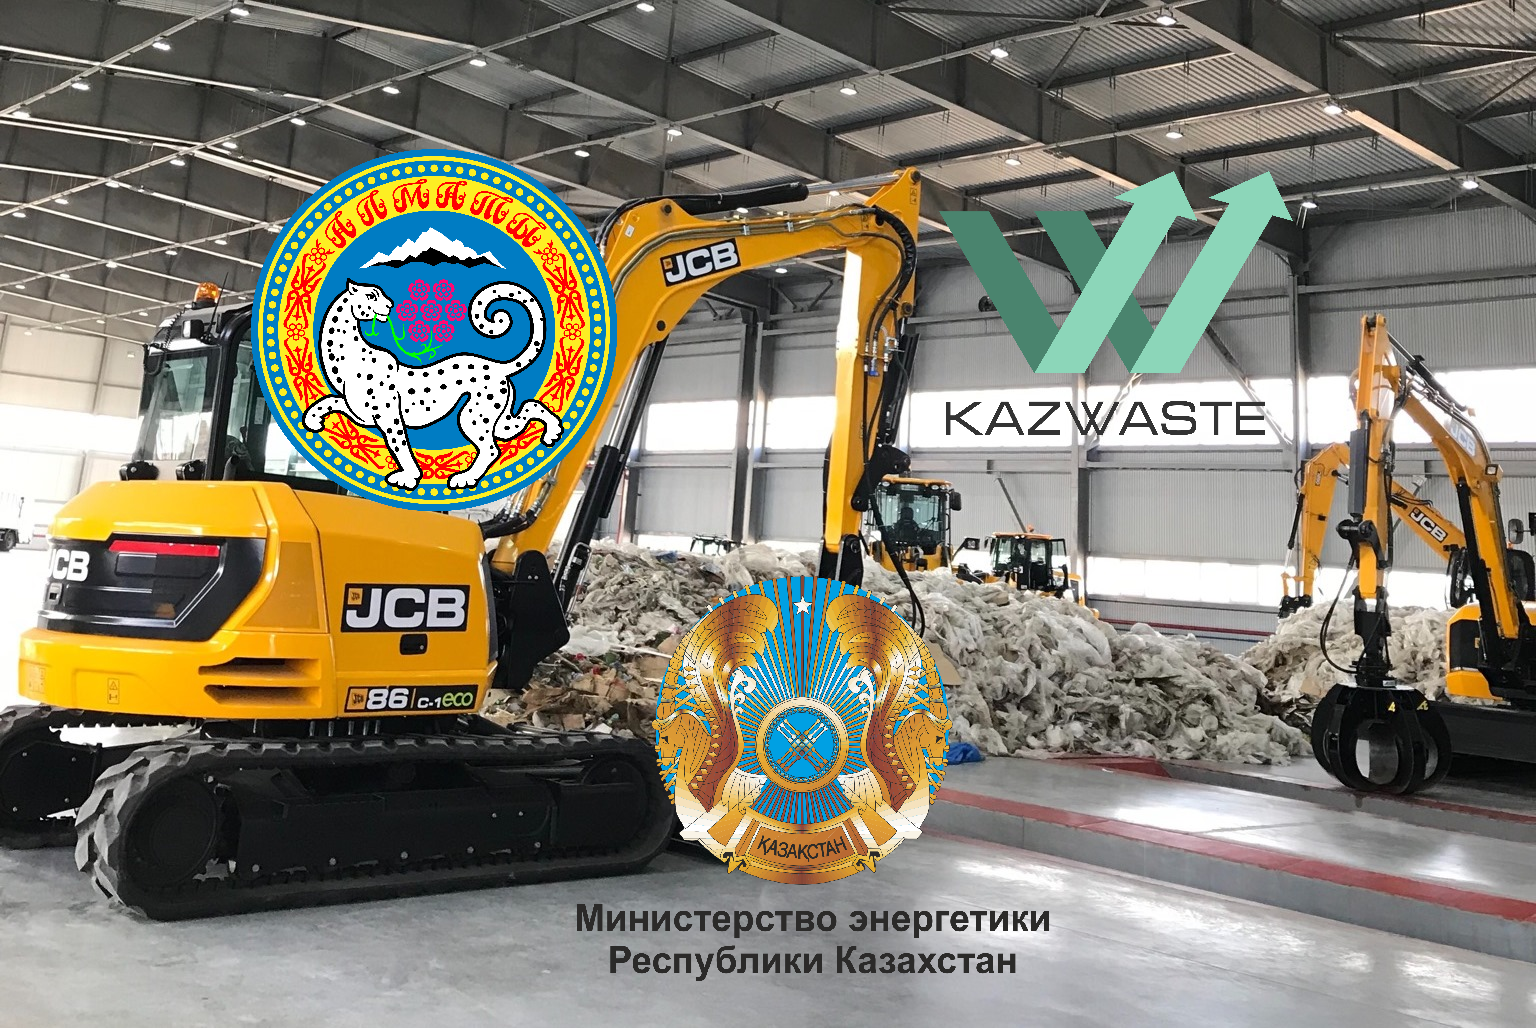 В Алматы обсудят новации и достижения по сбору и переработке коммунальных отходов в Казахстане на примере запустившегося мусоросортировочного комплекса